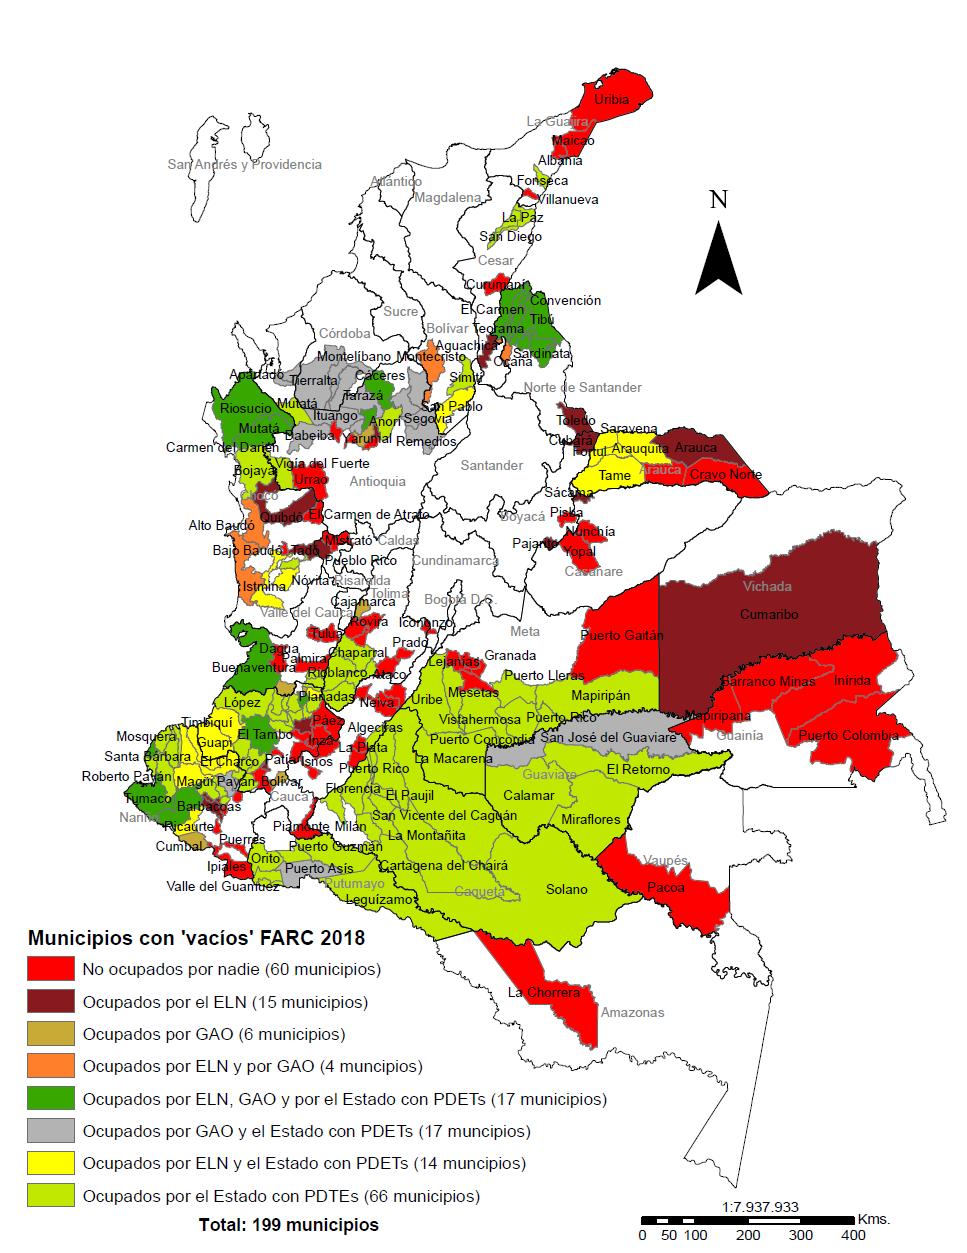 Mapa de Vacíos FARC Este mapa muestra los 199 municipios en los que se tuvo registro de la presencia armada de la guerrilla de las FARC en 2016, antes del proceso de desmovilización.